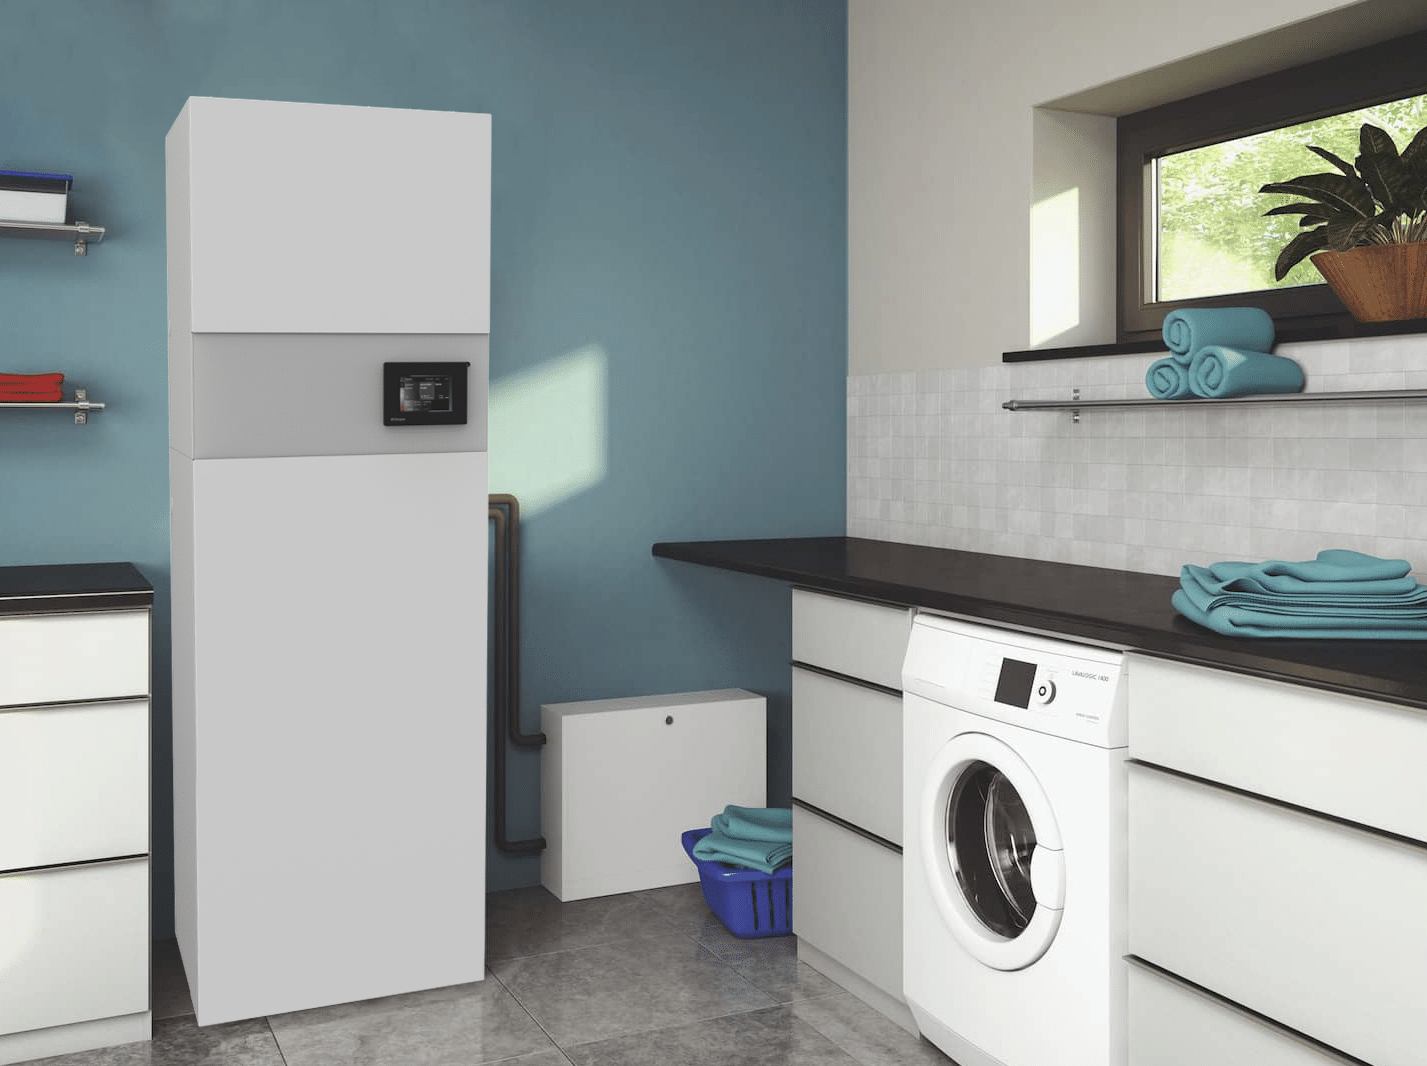 Dimplex zeigt eine Waschküche mit gefliestem Boden und blauen Wänden, mit einer Waschmaschine und viel Stauraum für Wäsche mit einem eckigen Warmwassersystem in weiss an der Wand.